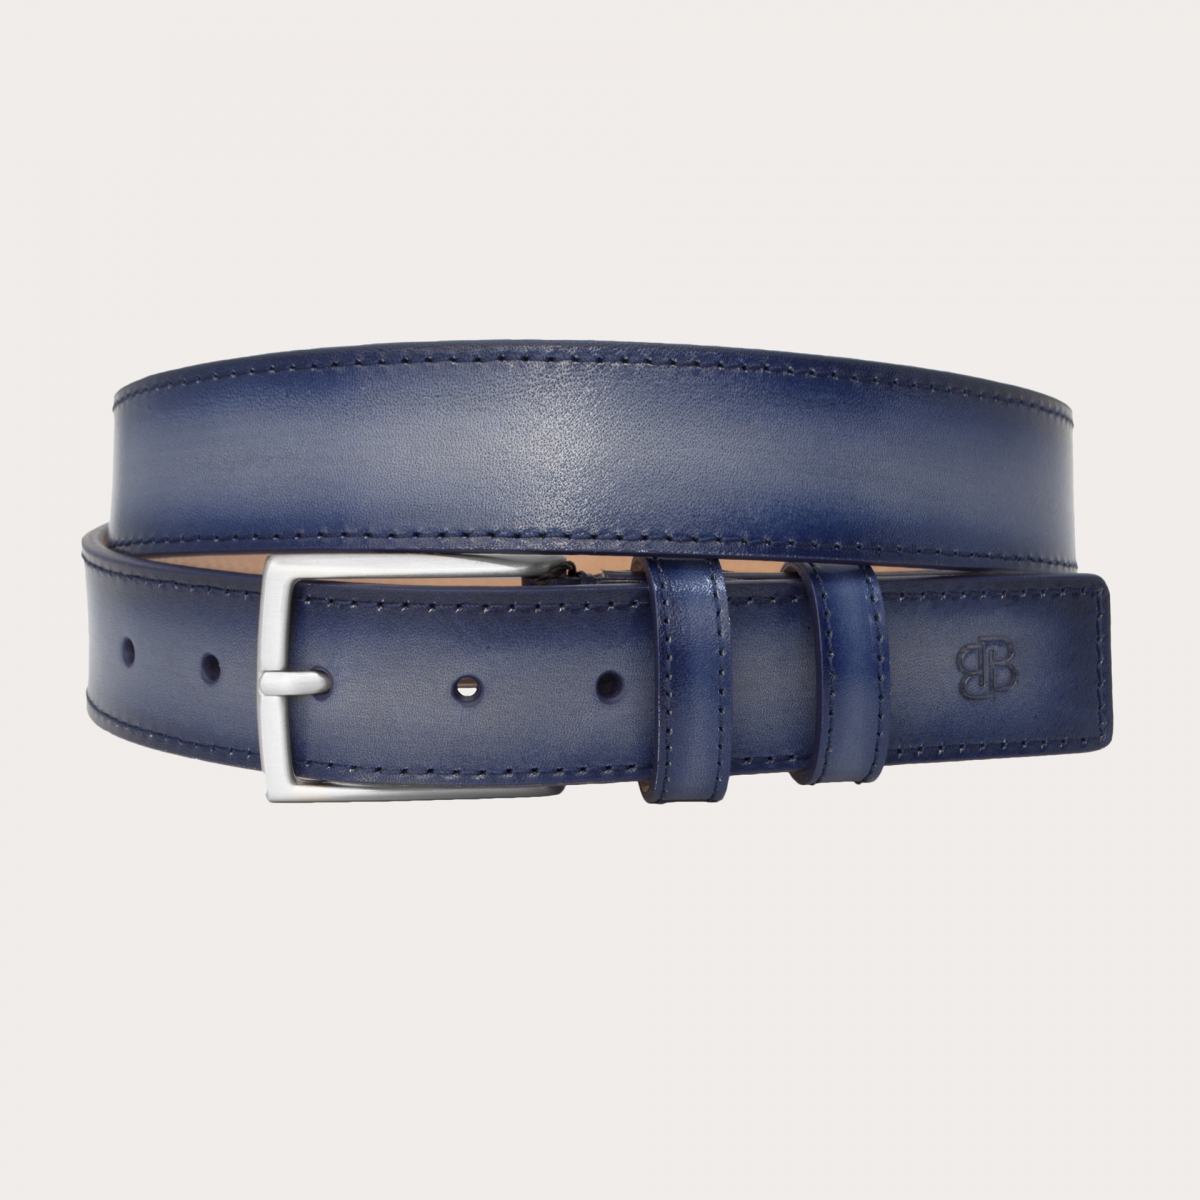 BRUCLE Cinturón de hombre de piel coloreada a mano sin níquel, gris degradado azul marino